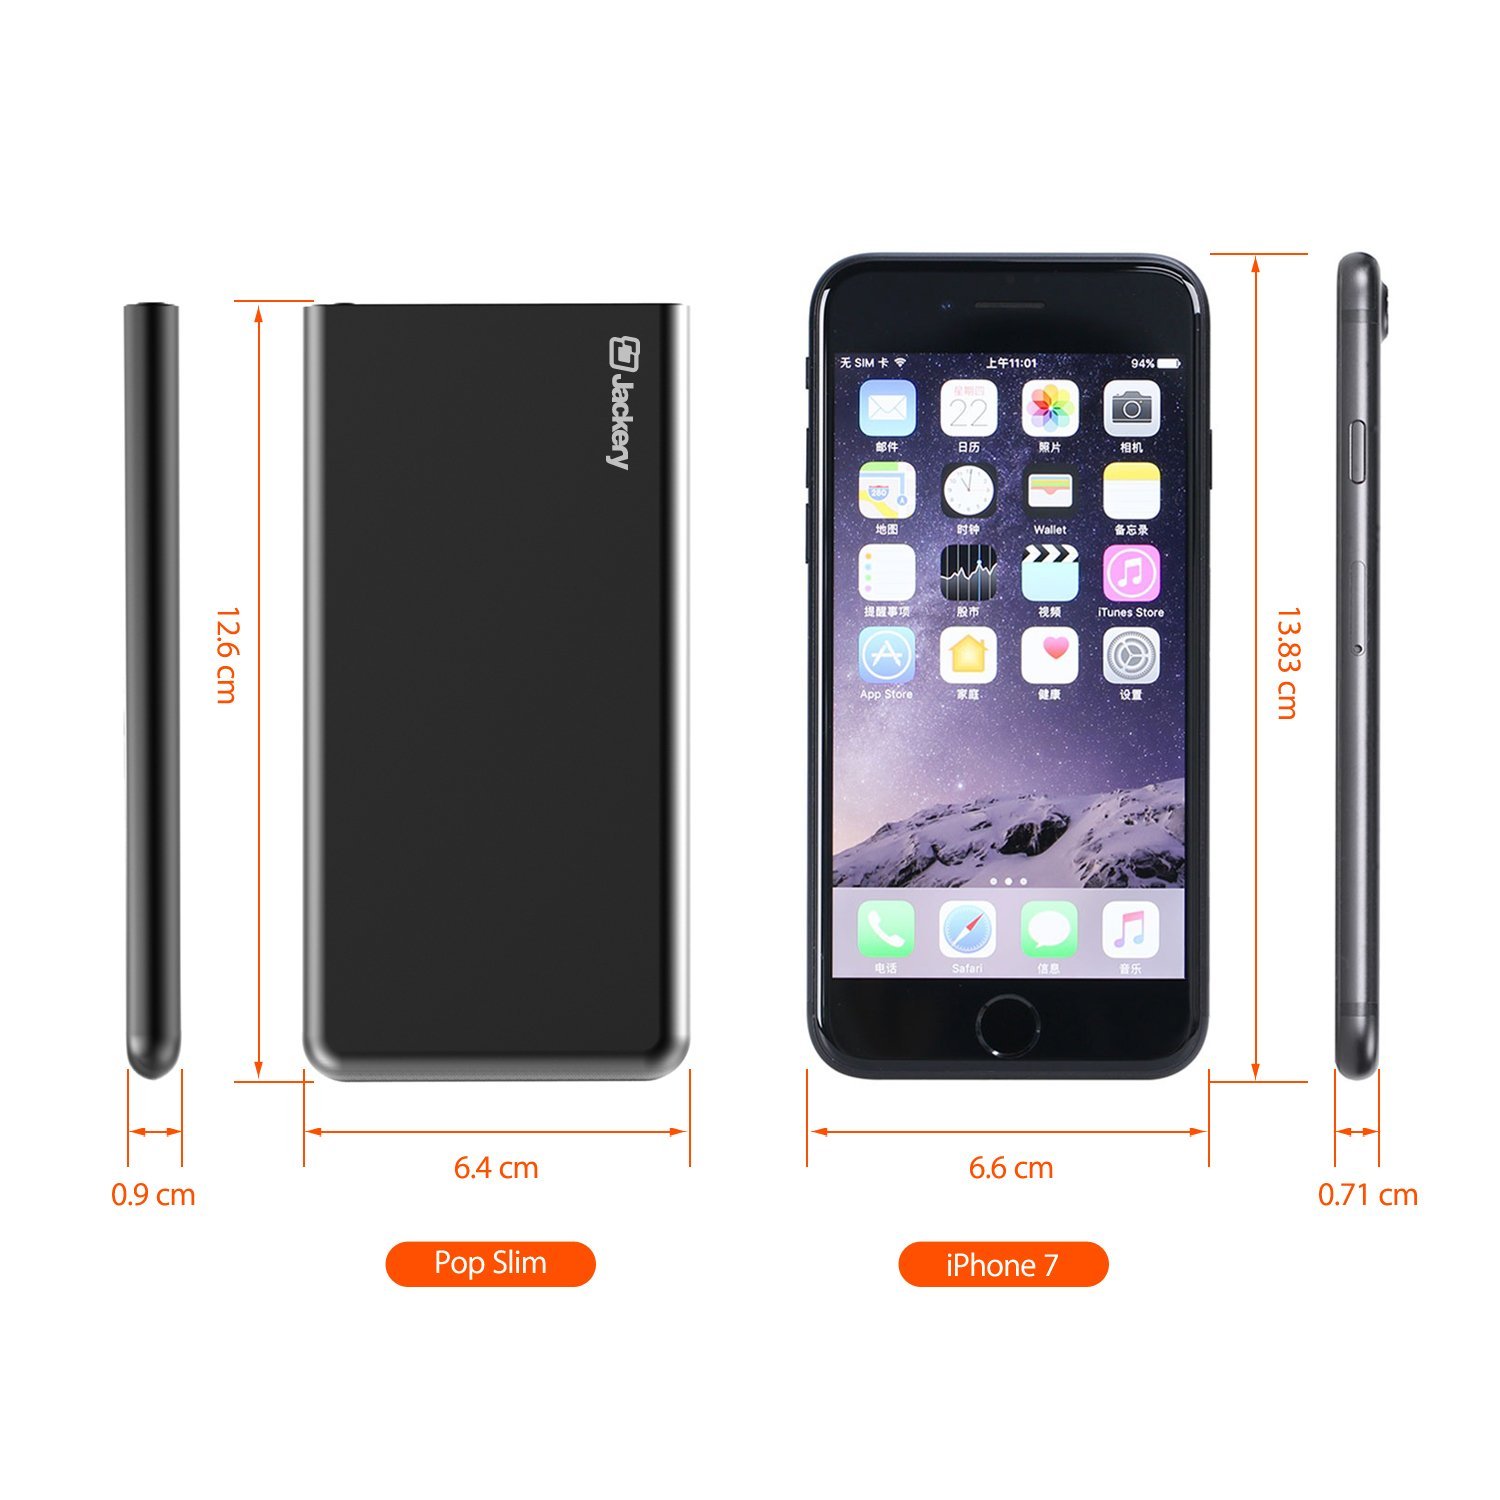 As Slim As Iphone Jackery Pop Slim 5000mah External Battery Pack